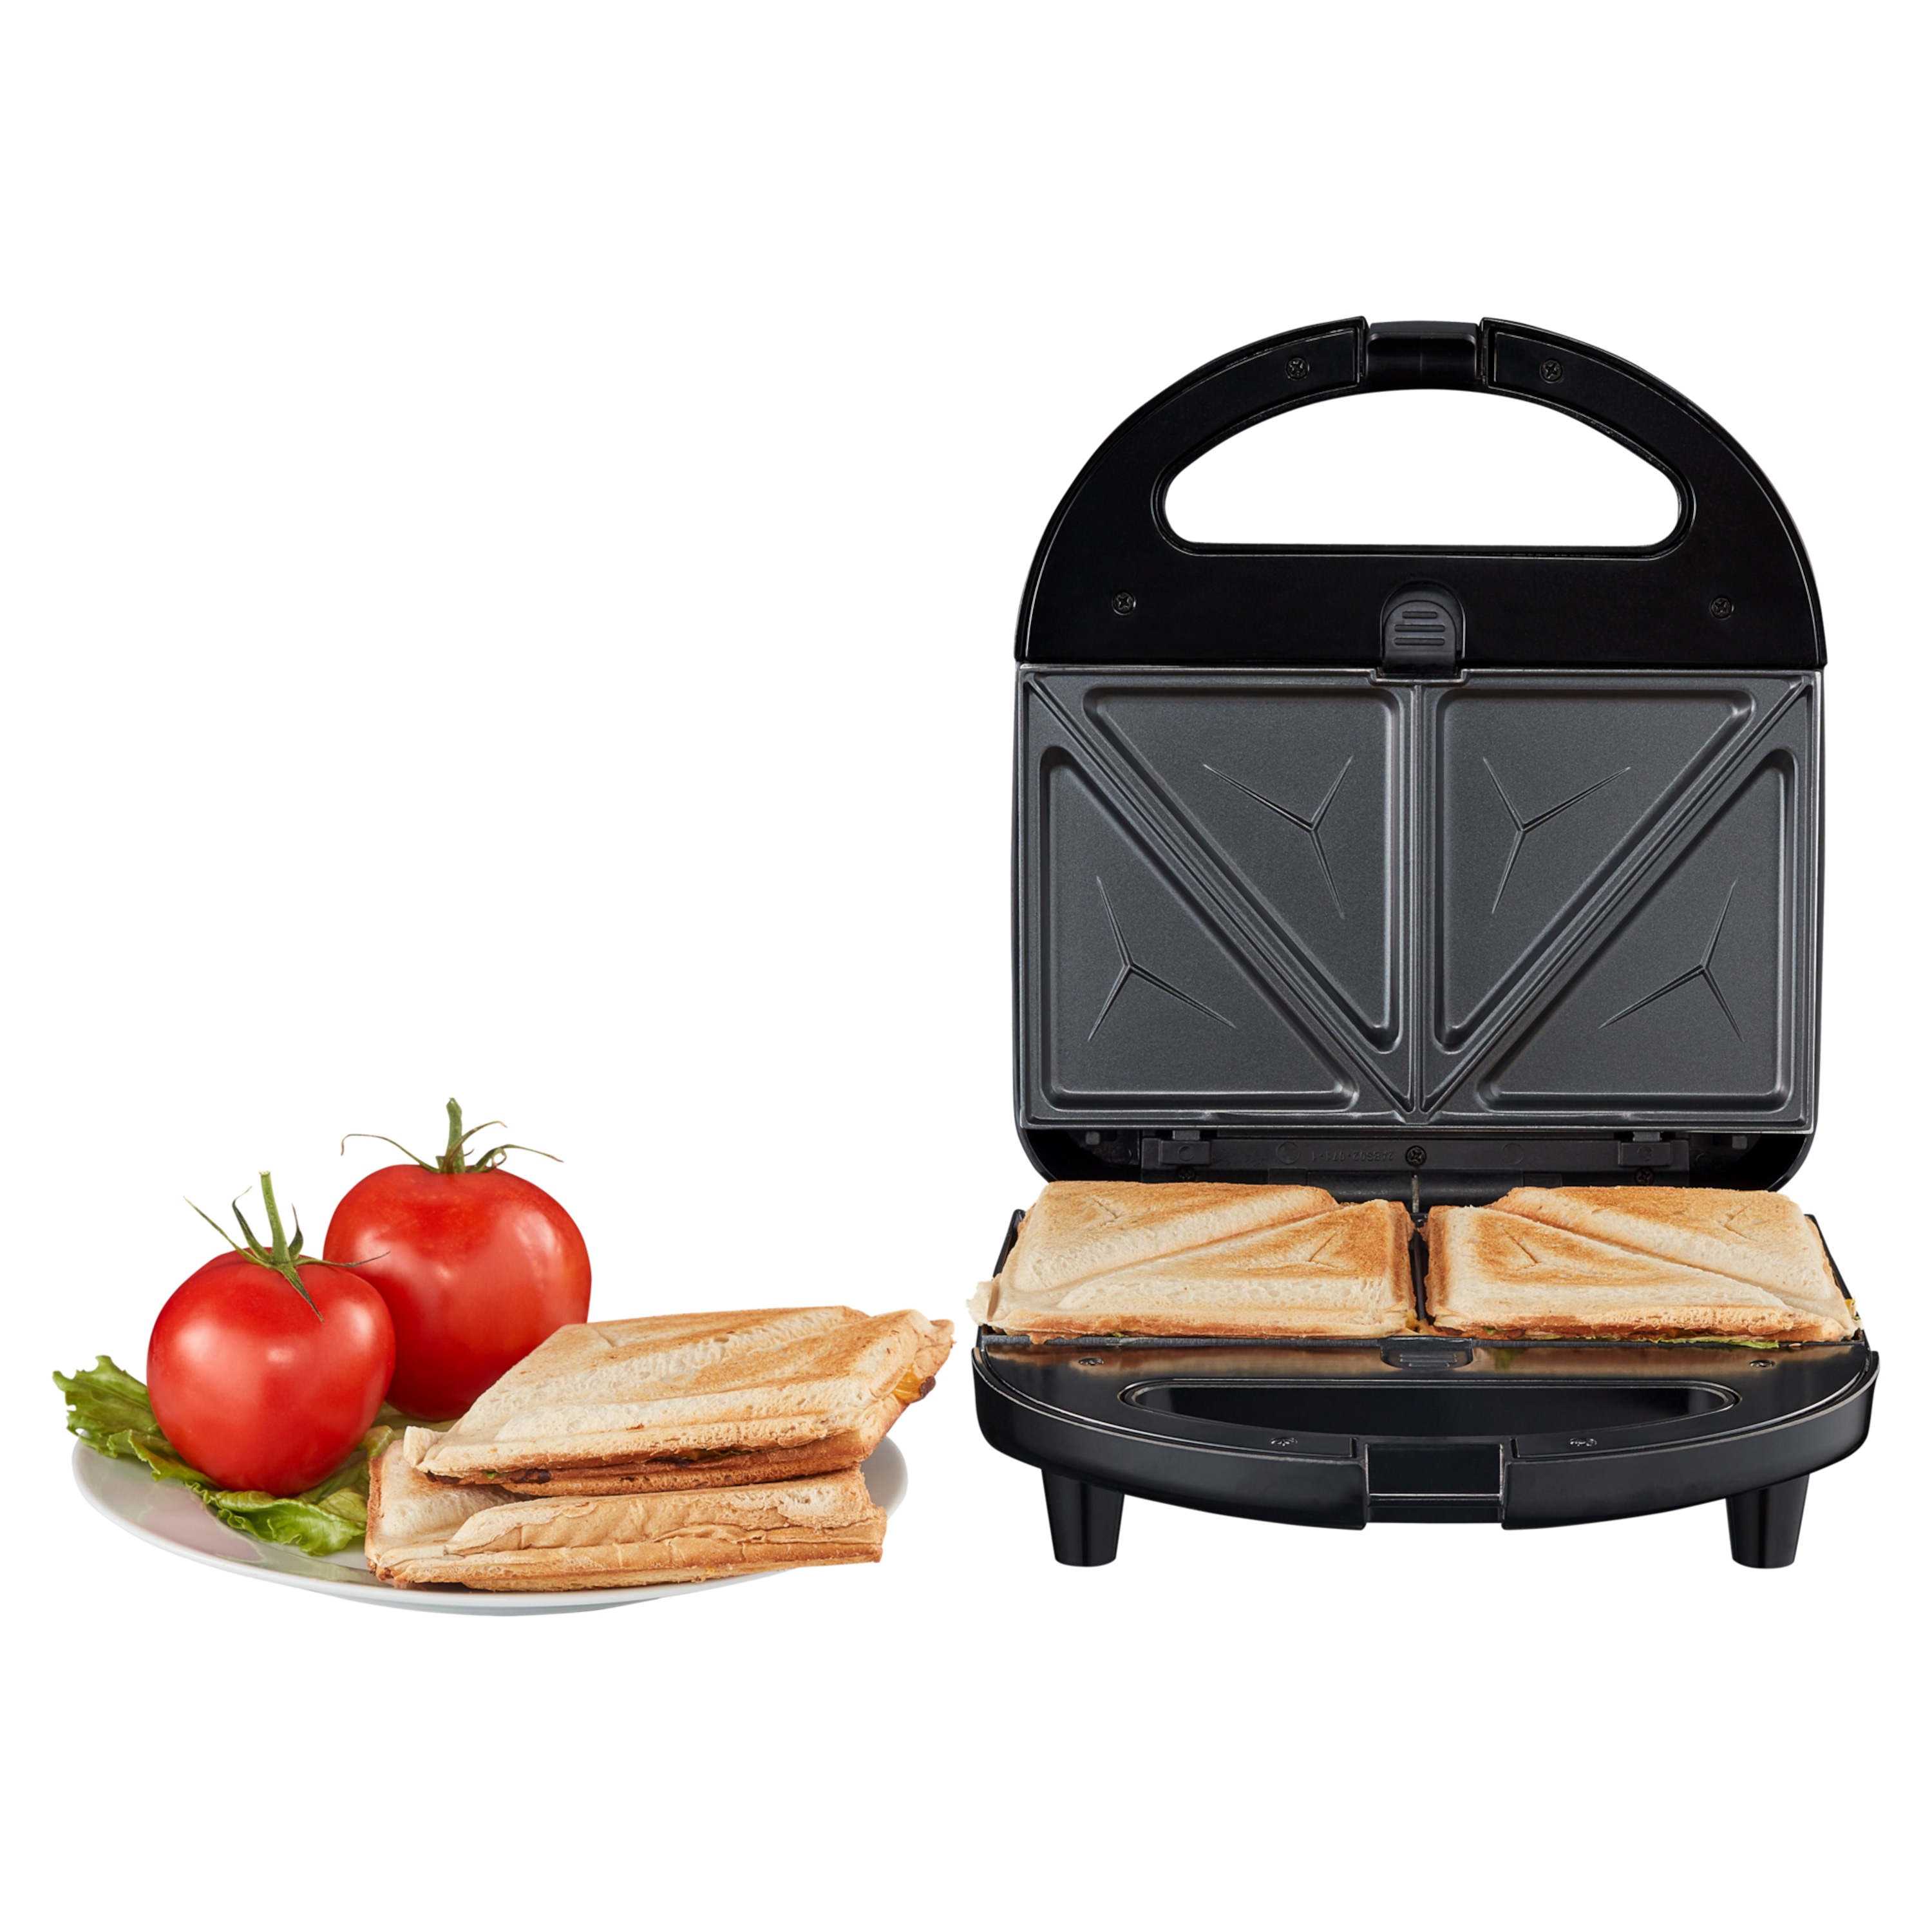 3-in-1 Tosti ijzer MD 19788 | Sandwich, wafel of panini | Verwijderbare platen met antiaanbaklaag | Max. 750 watt